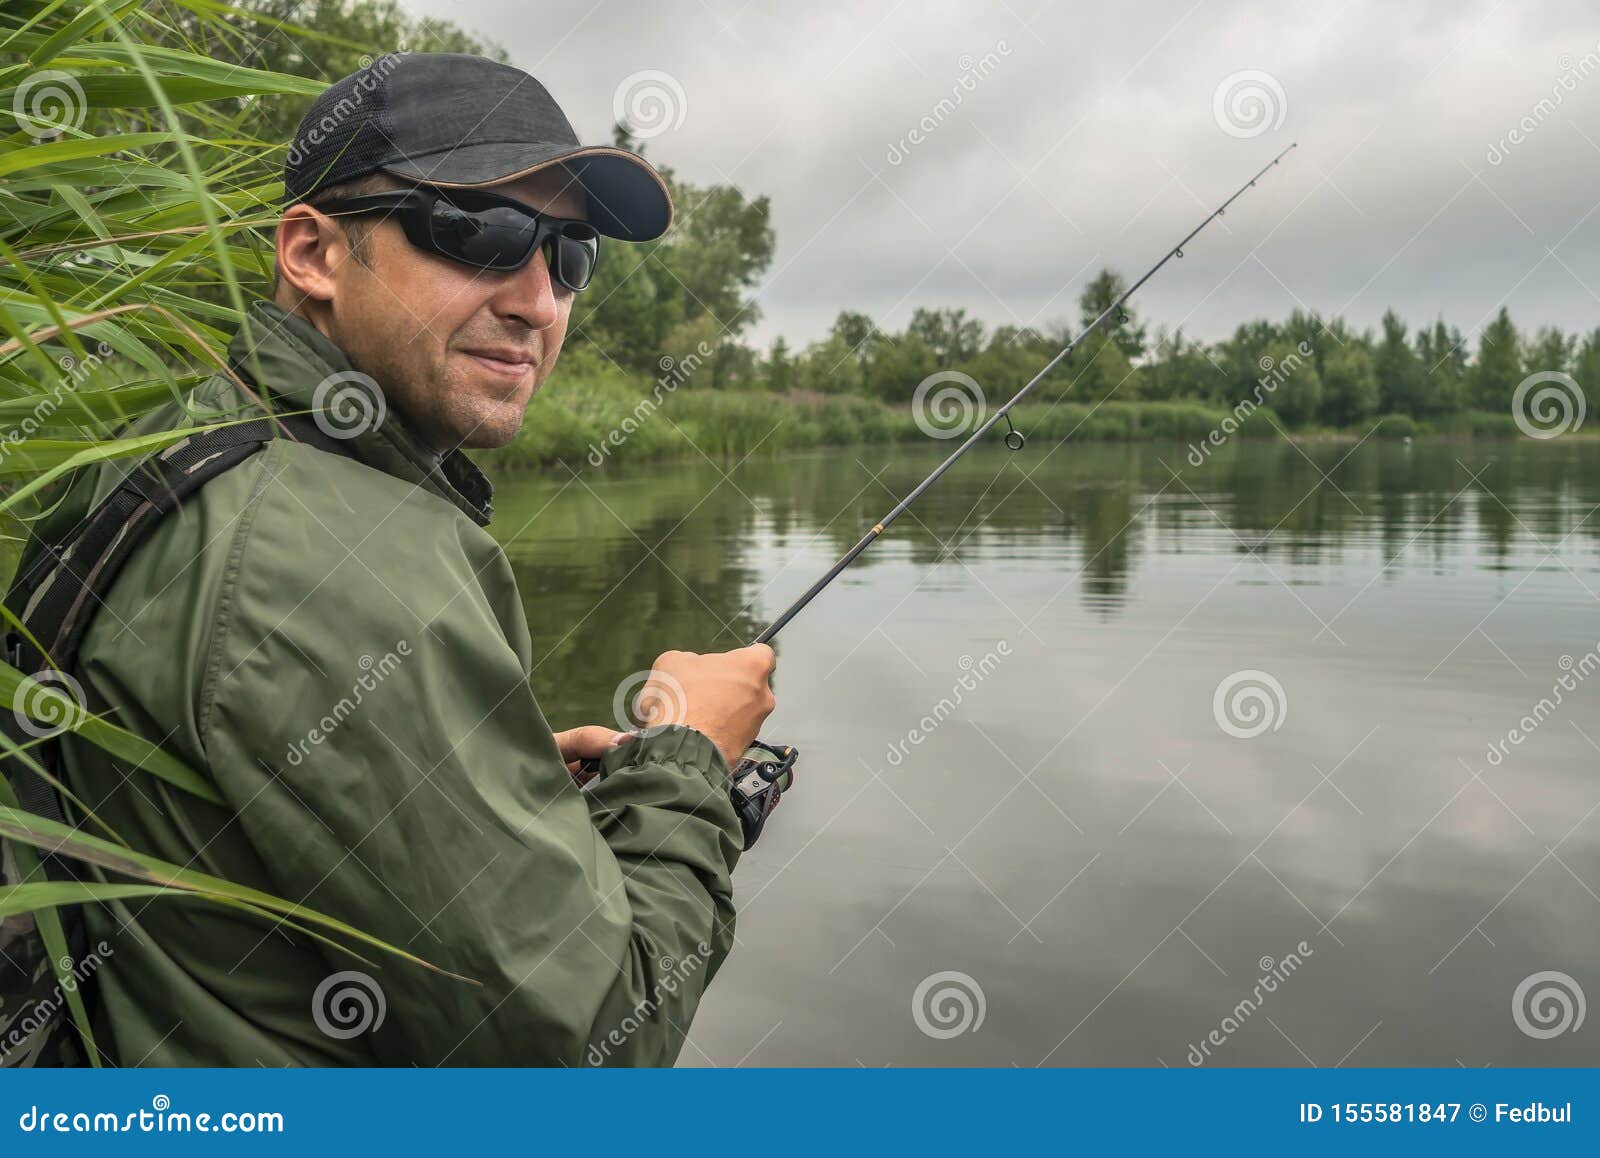 action man fishing